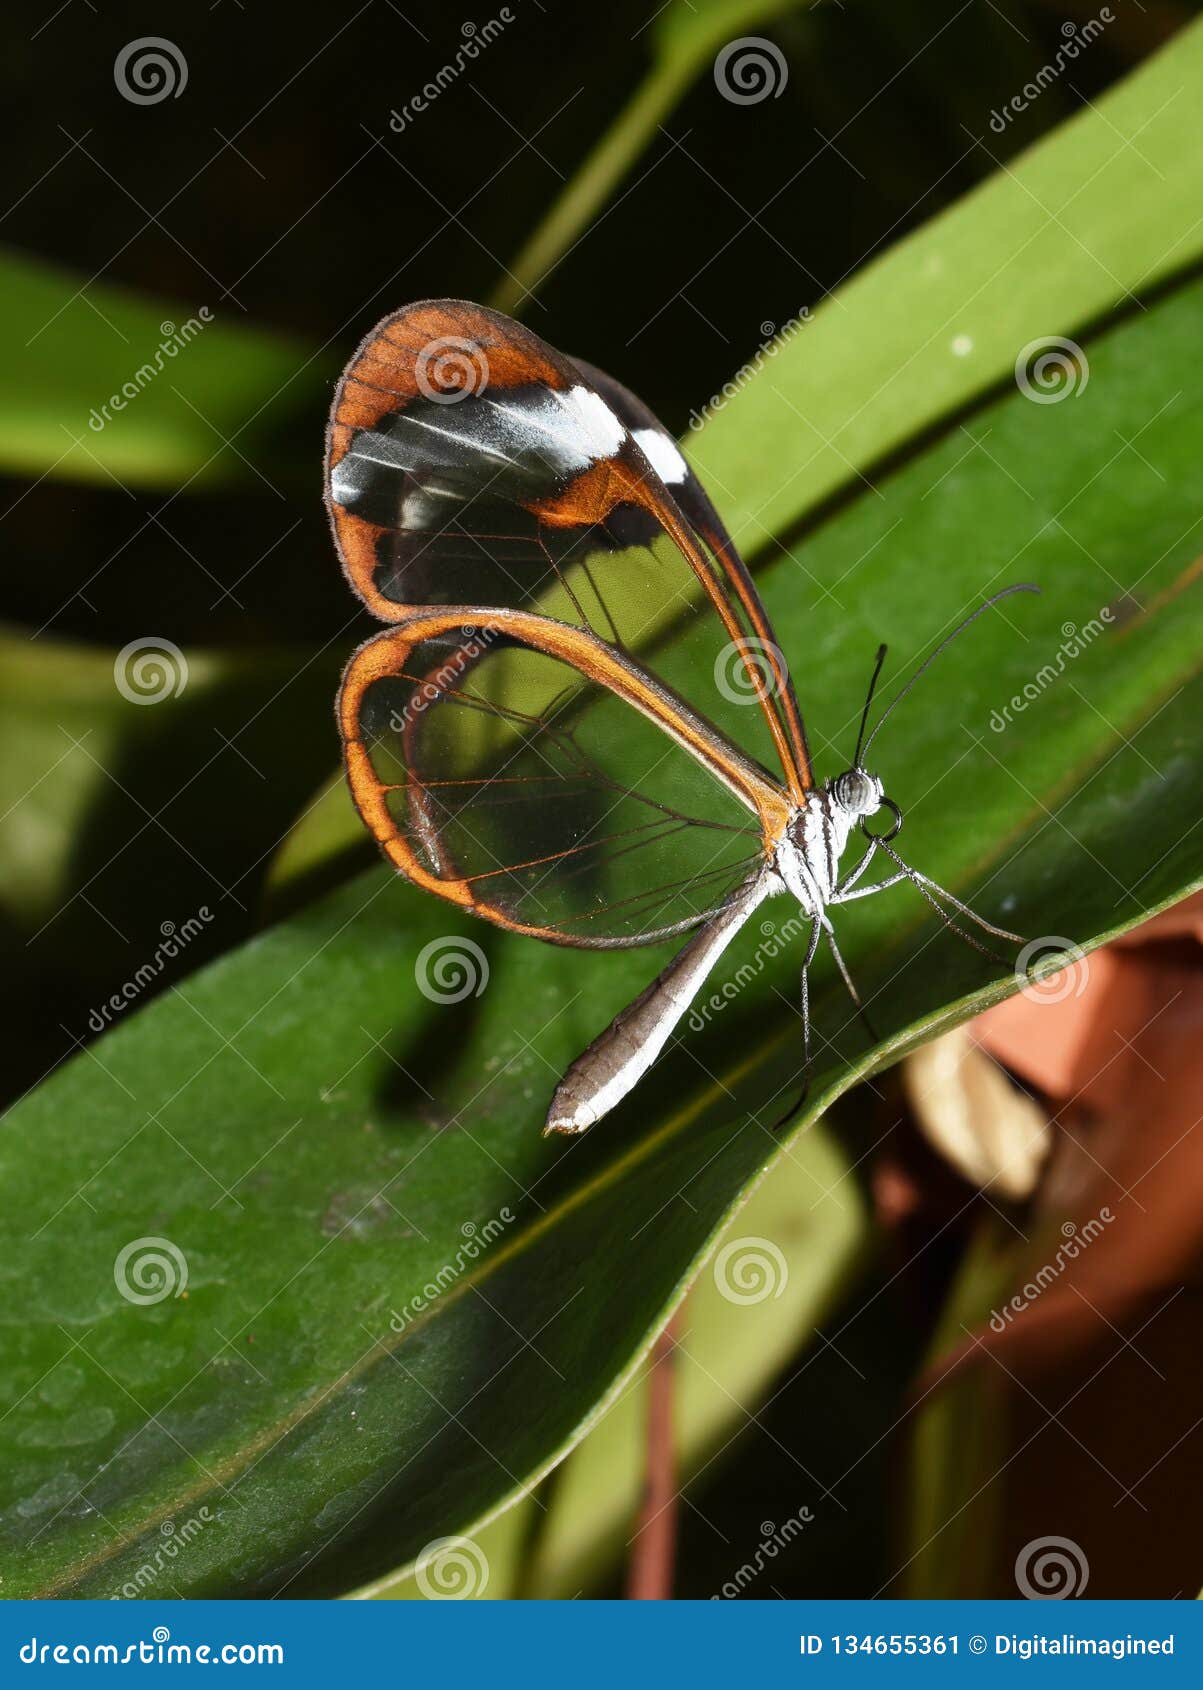 greta oto glasswing butterfly on leaf